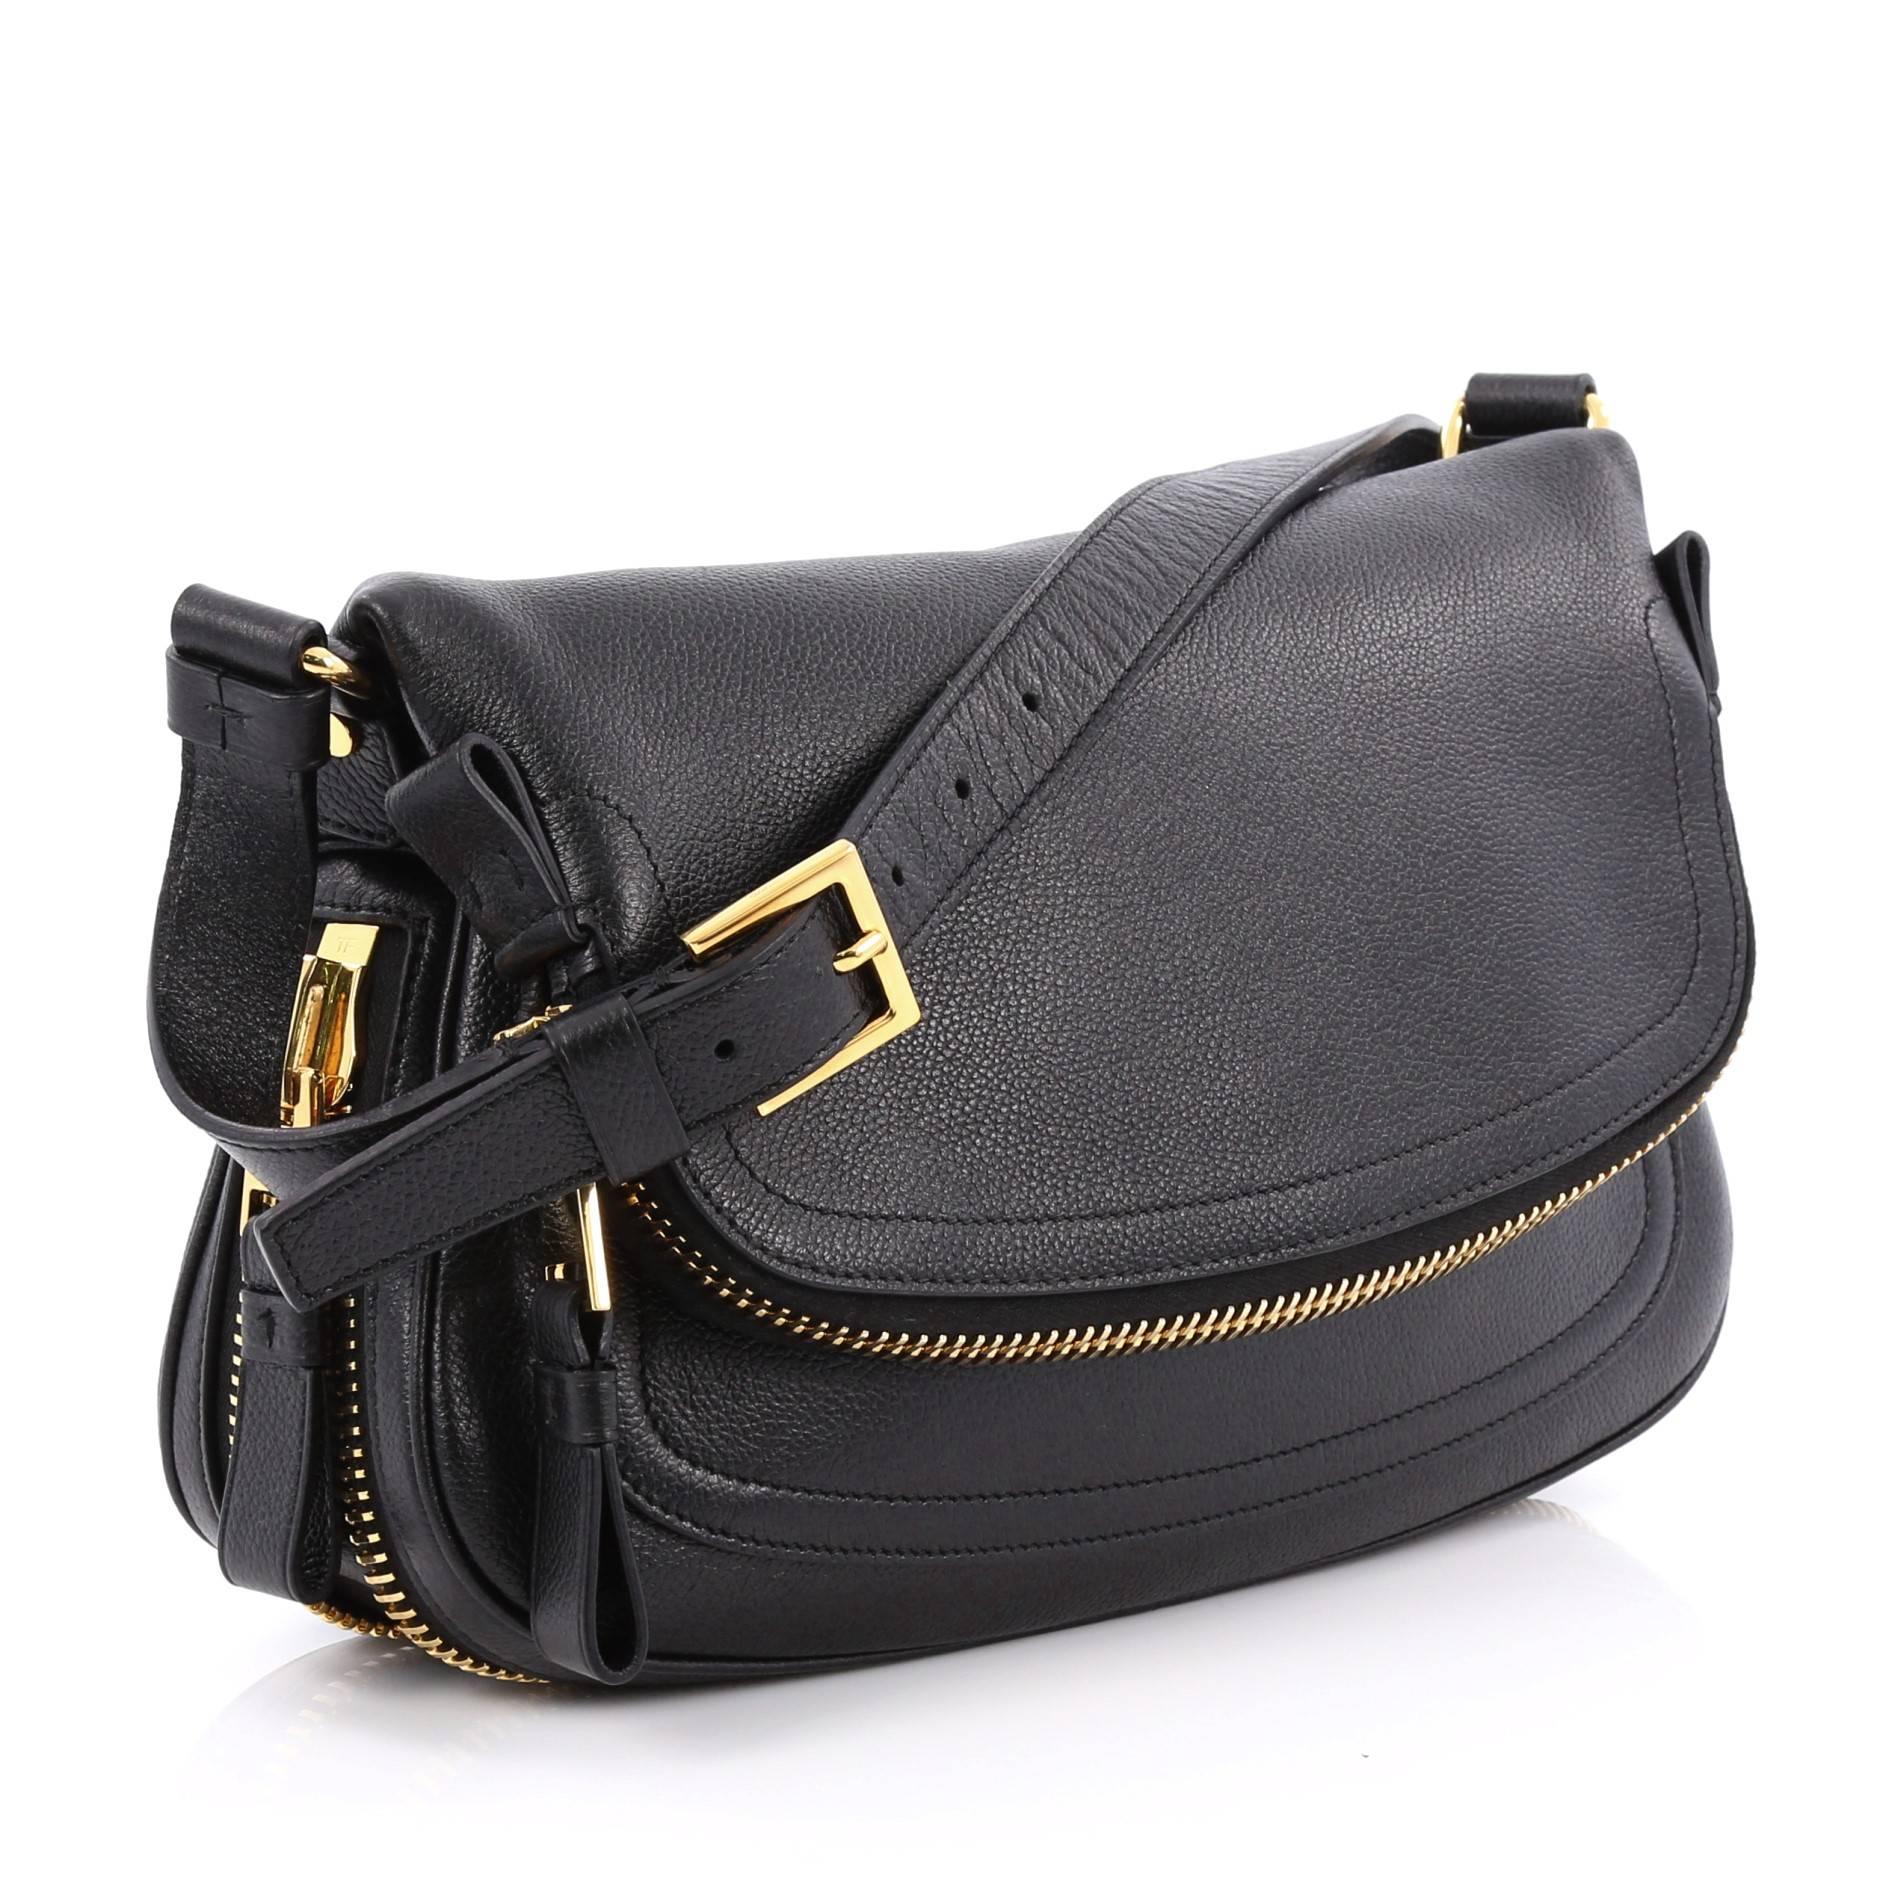 Black Tom Ford Jennifer Shoulder Bag NM Leather Medium 